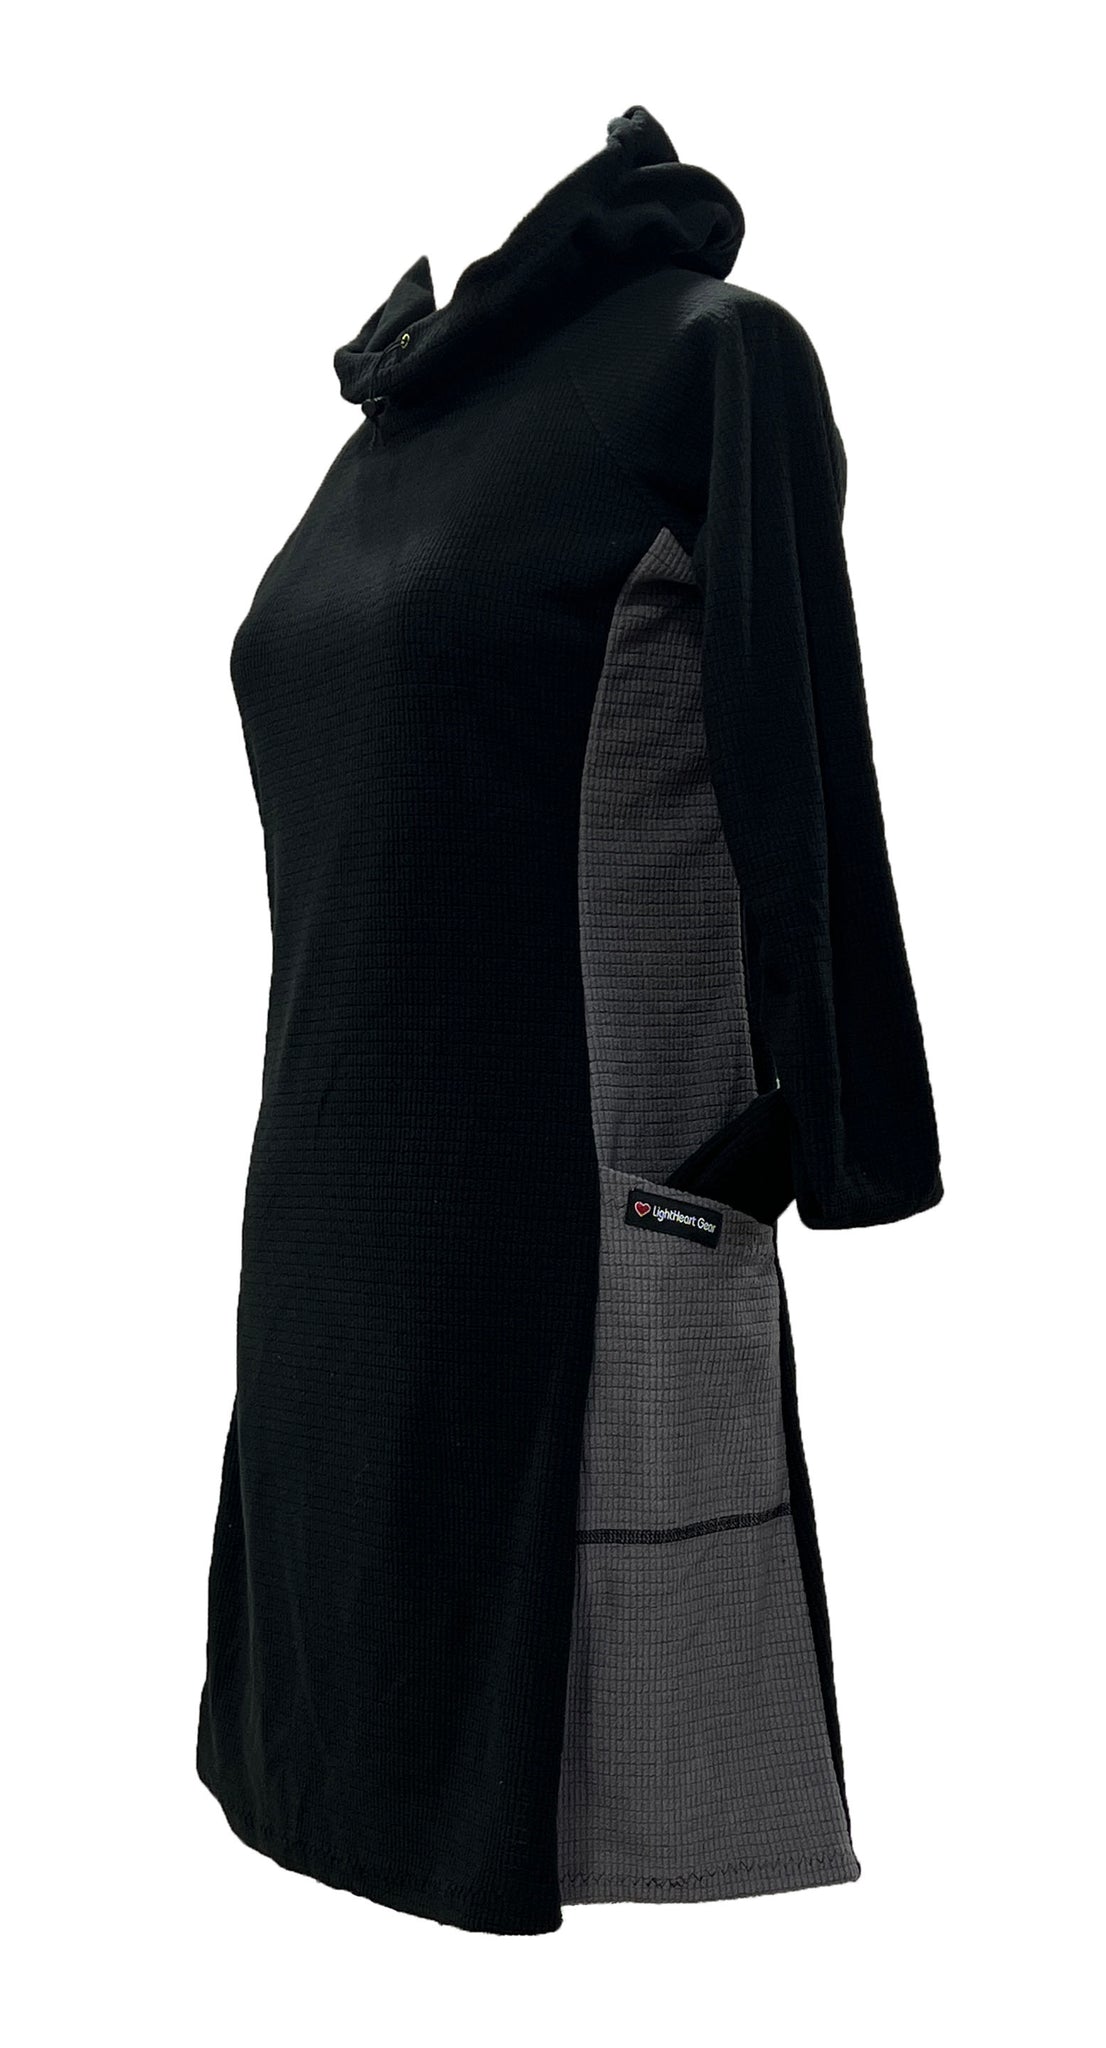 Fleece dress - Small – LightHeart Gear